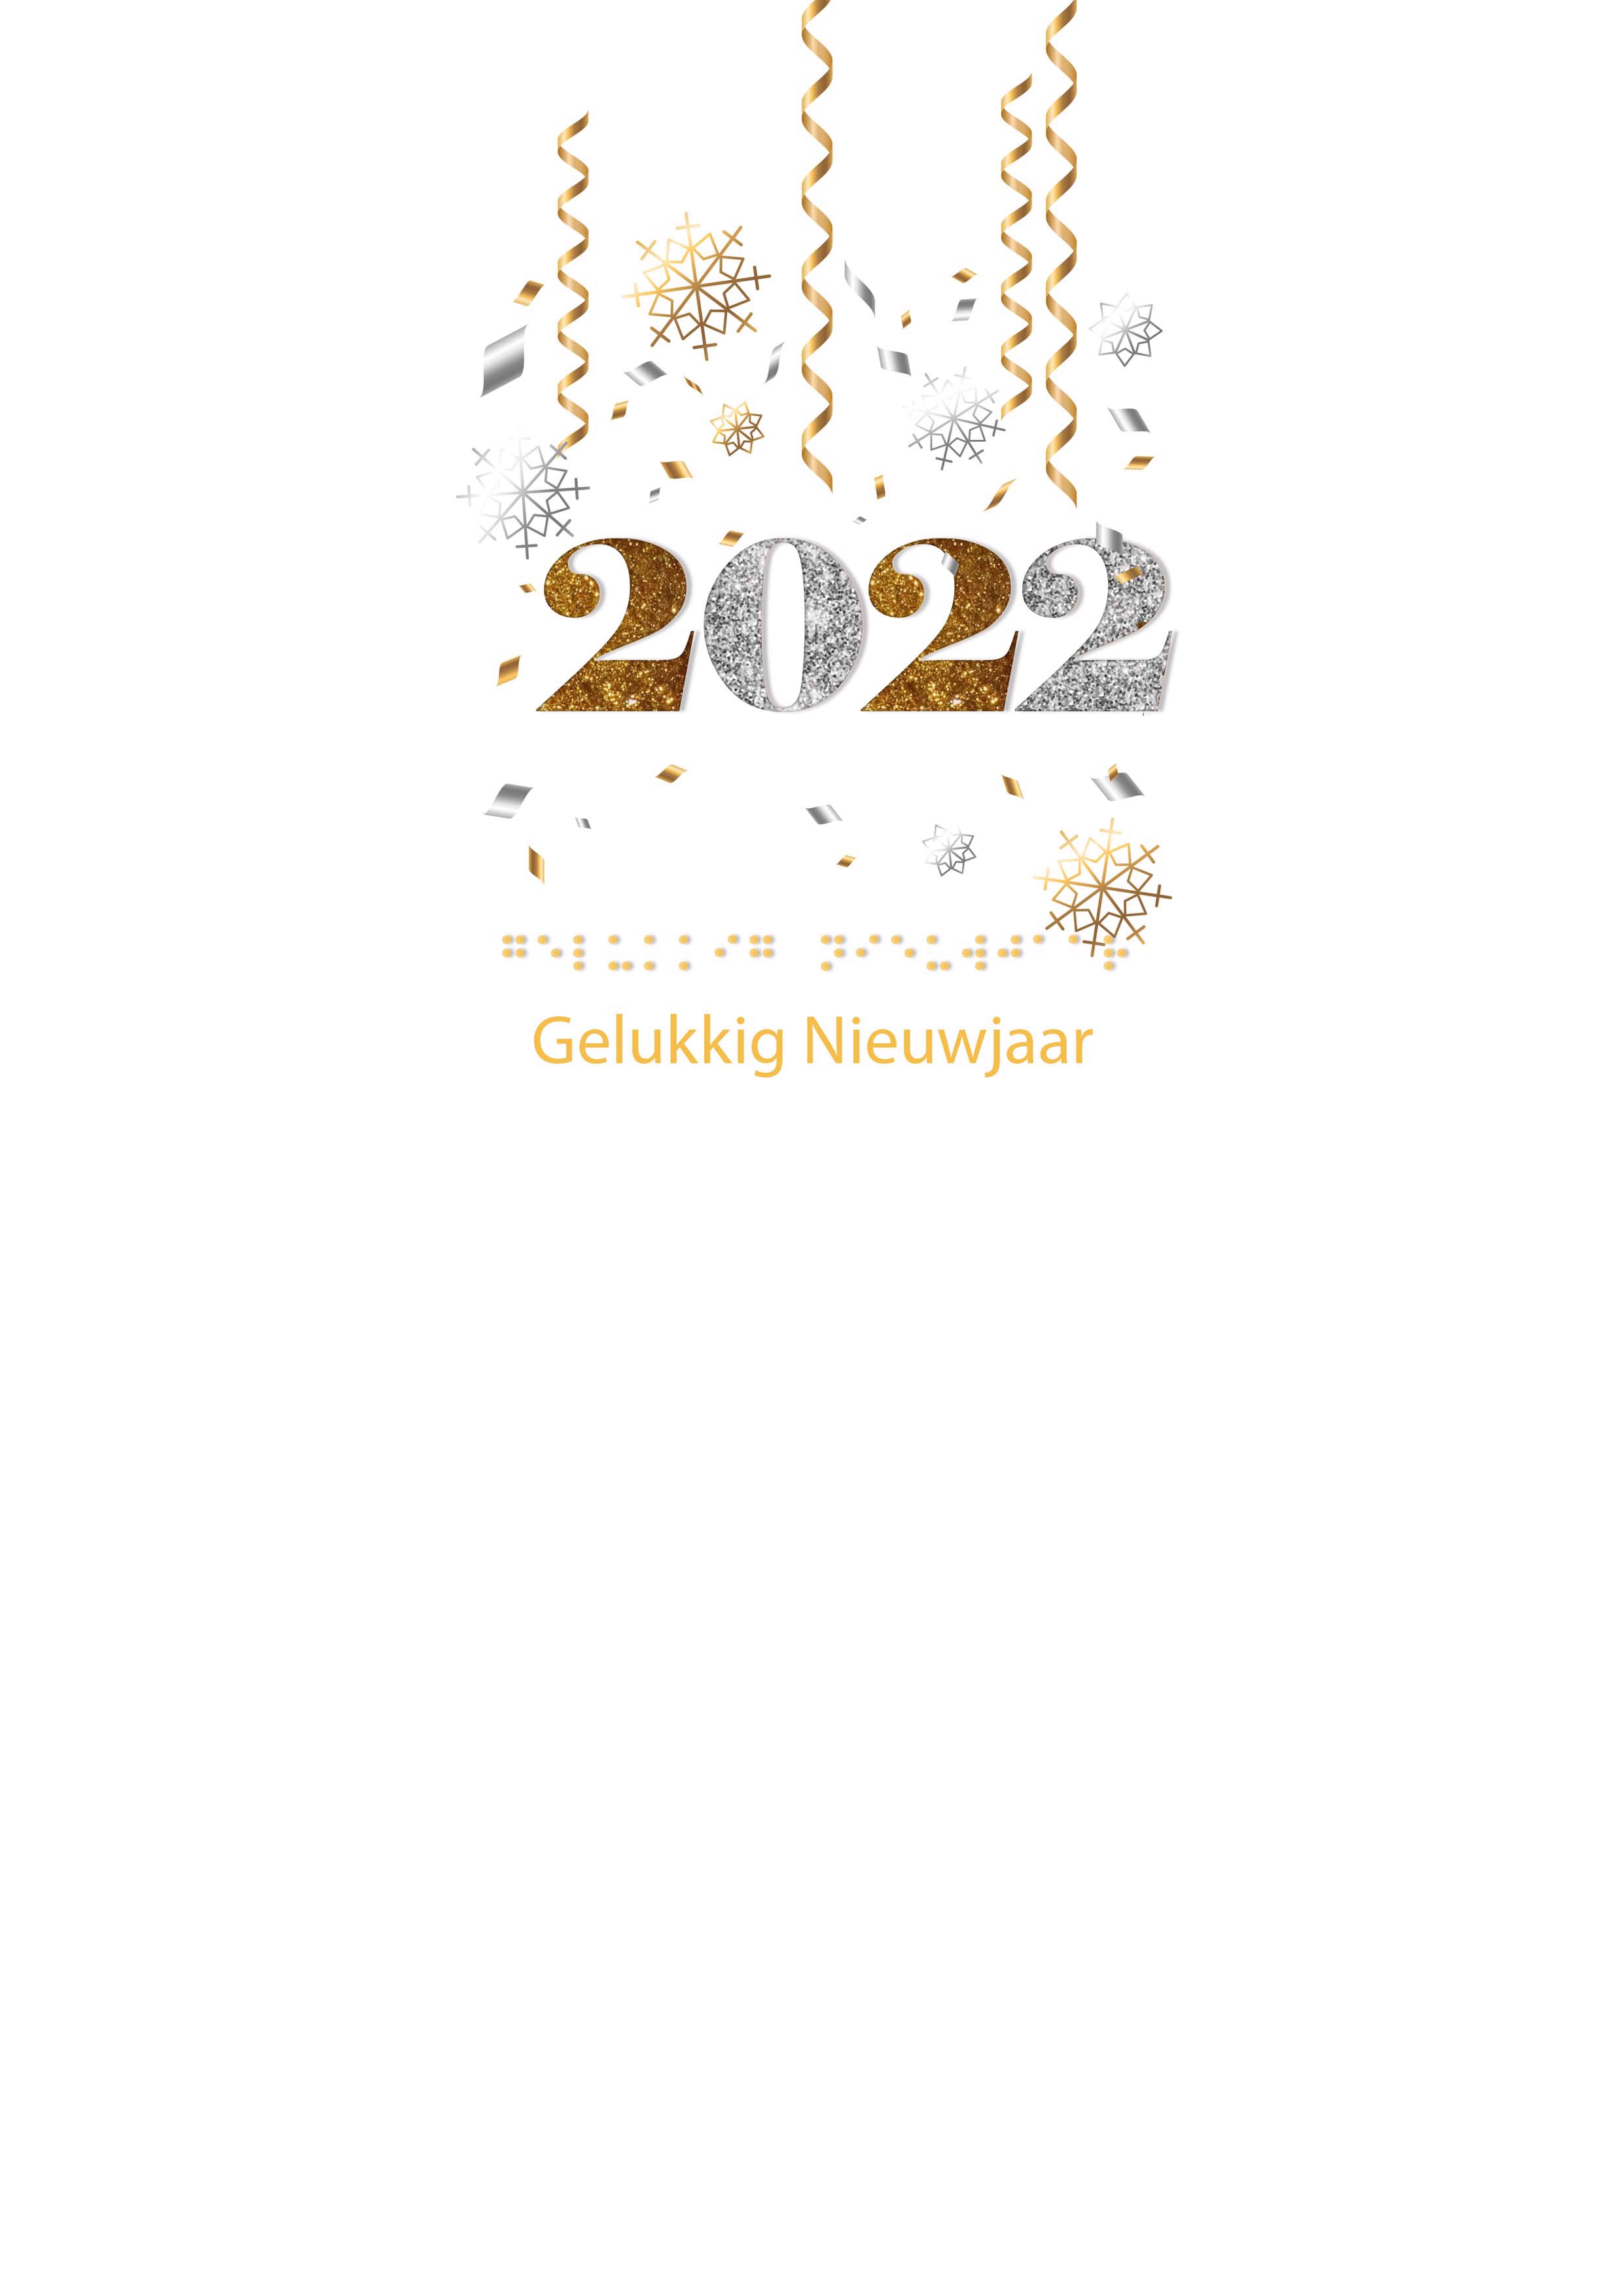 Voelbare kerstkaart met in braille de tekst Gelukkig Nieuwjaar en de cijfers 2022 in reliëf tegen een witte achtergrond.